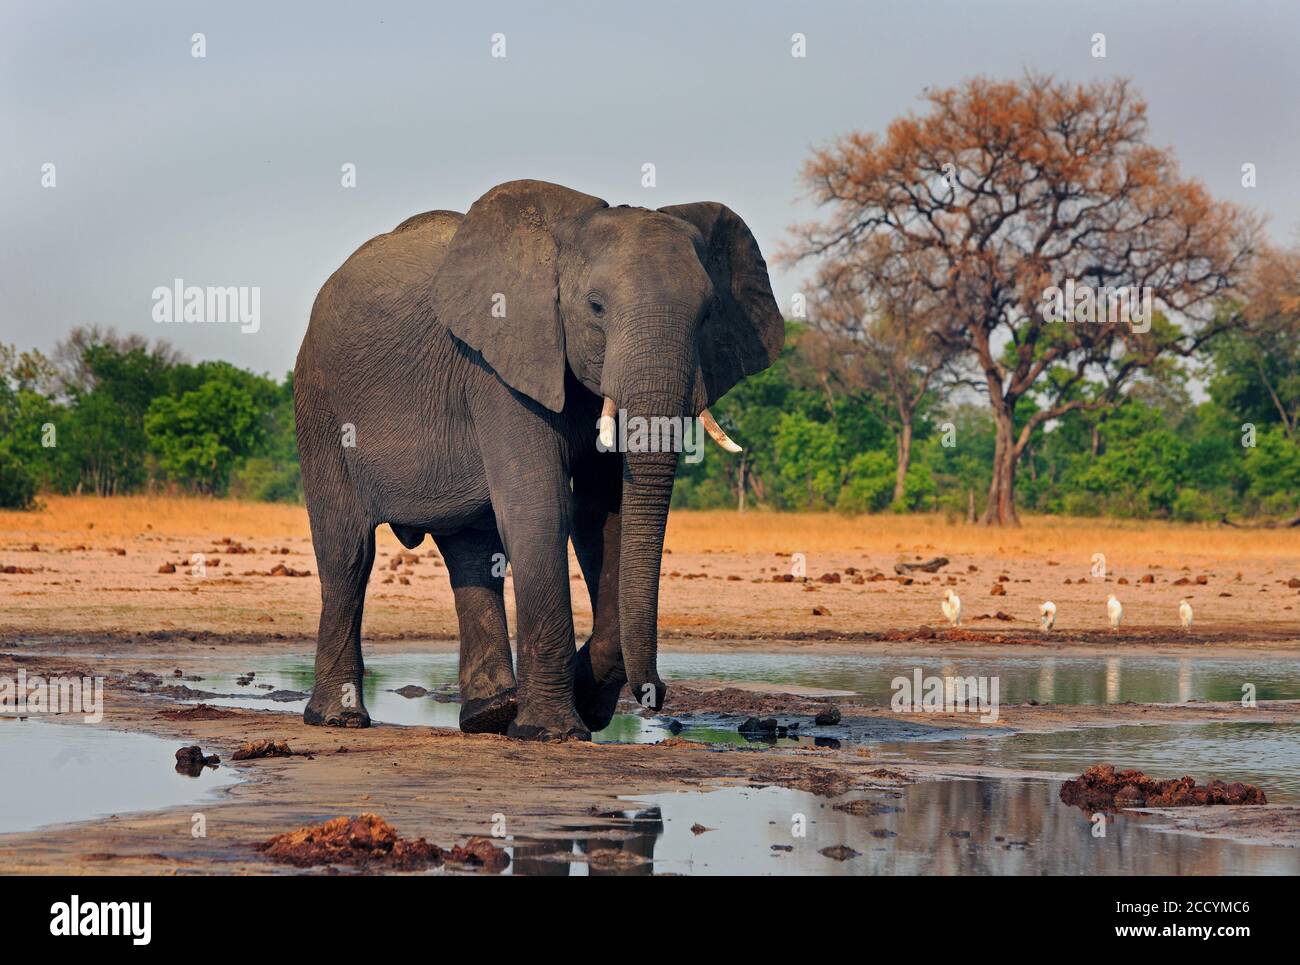 Elefante africano in piedi in una buca d'acqua con la vegetazione africana sullo sfondo. Makololo, Parco Nazionale di Hwange, Zimbabwe, Africa del Sud Foto Stock